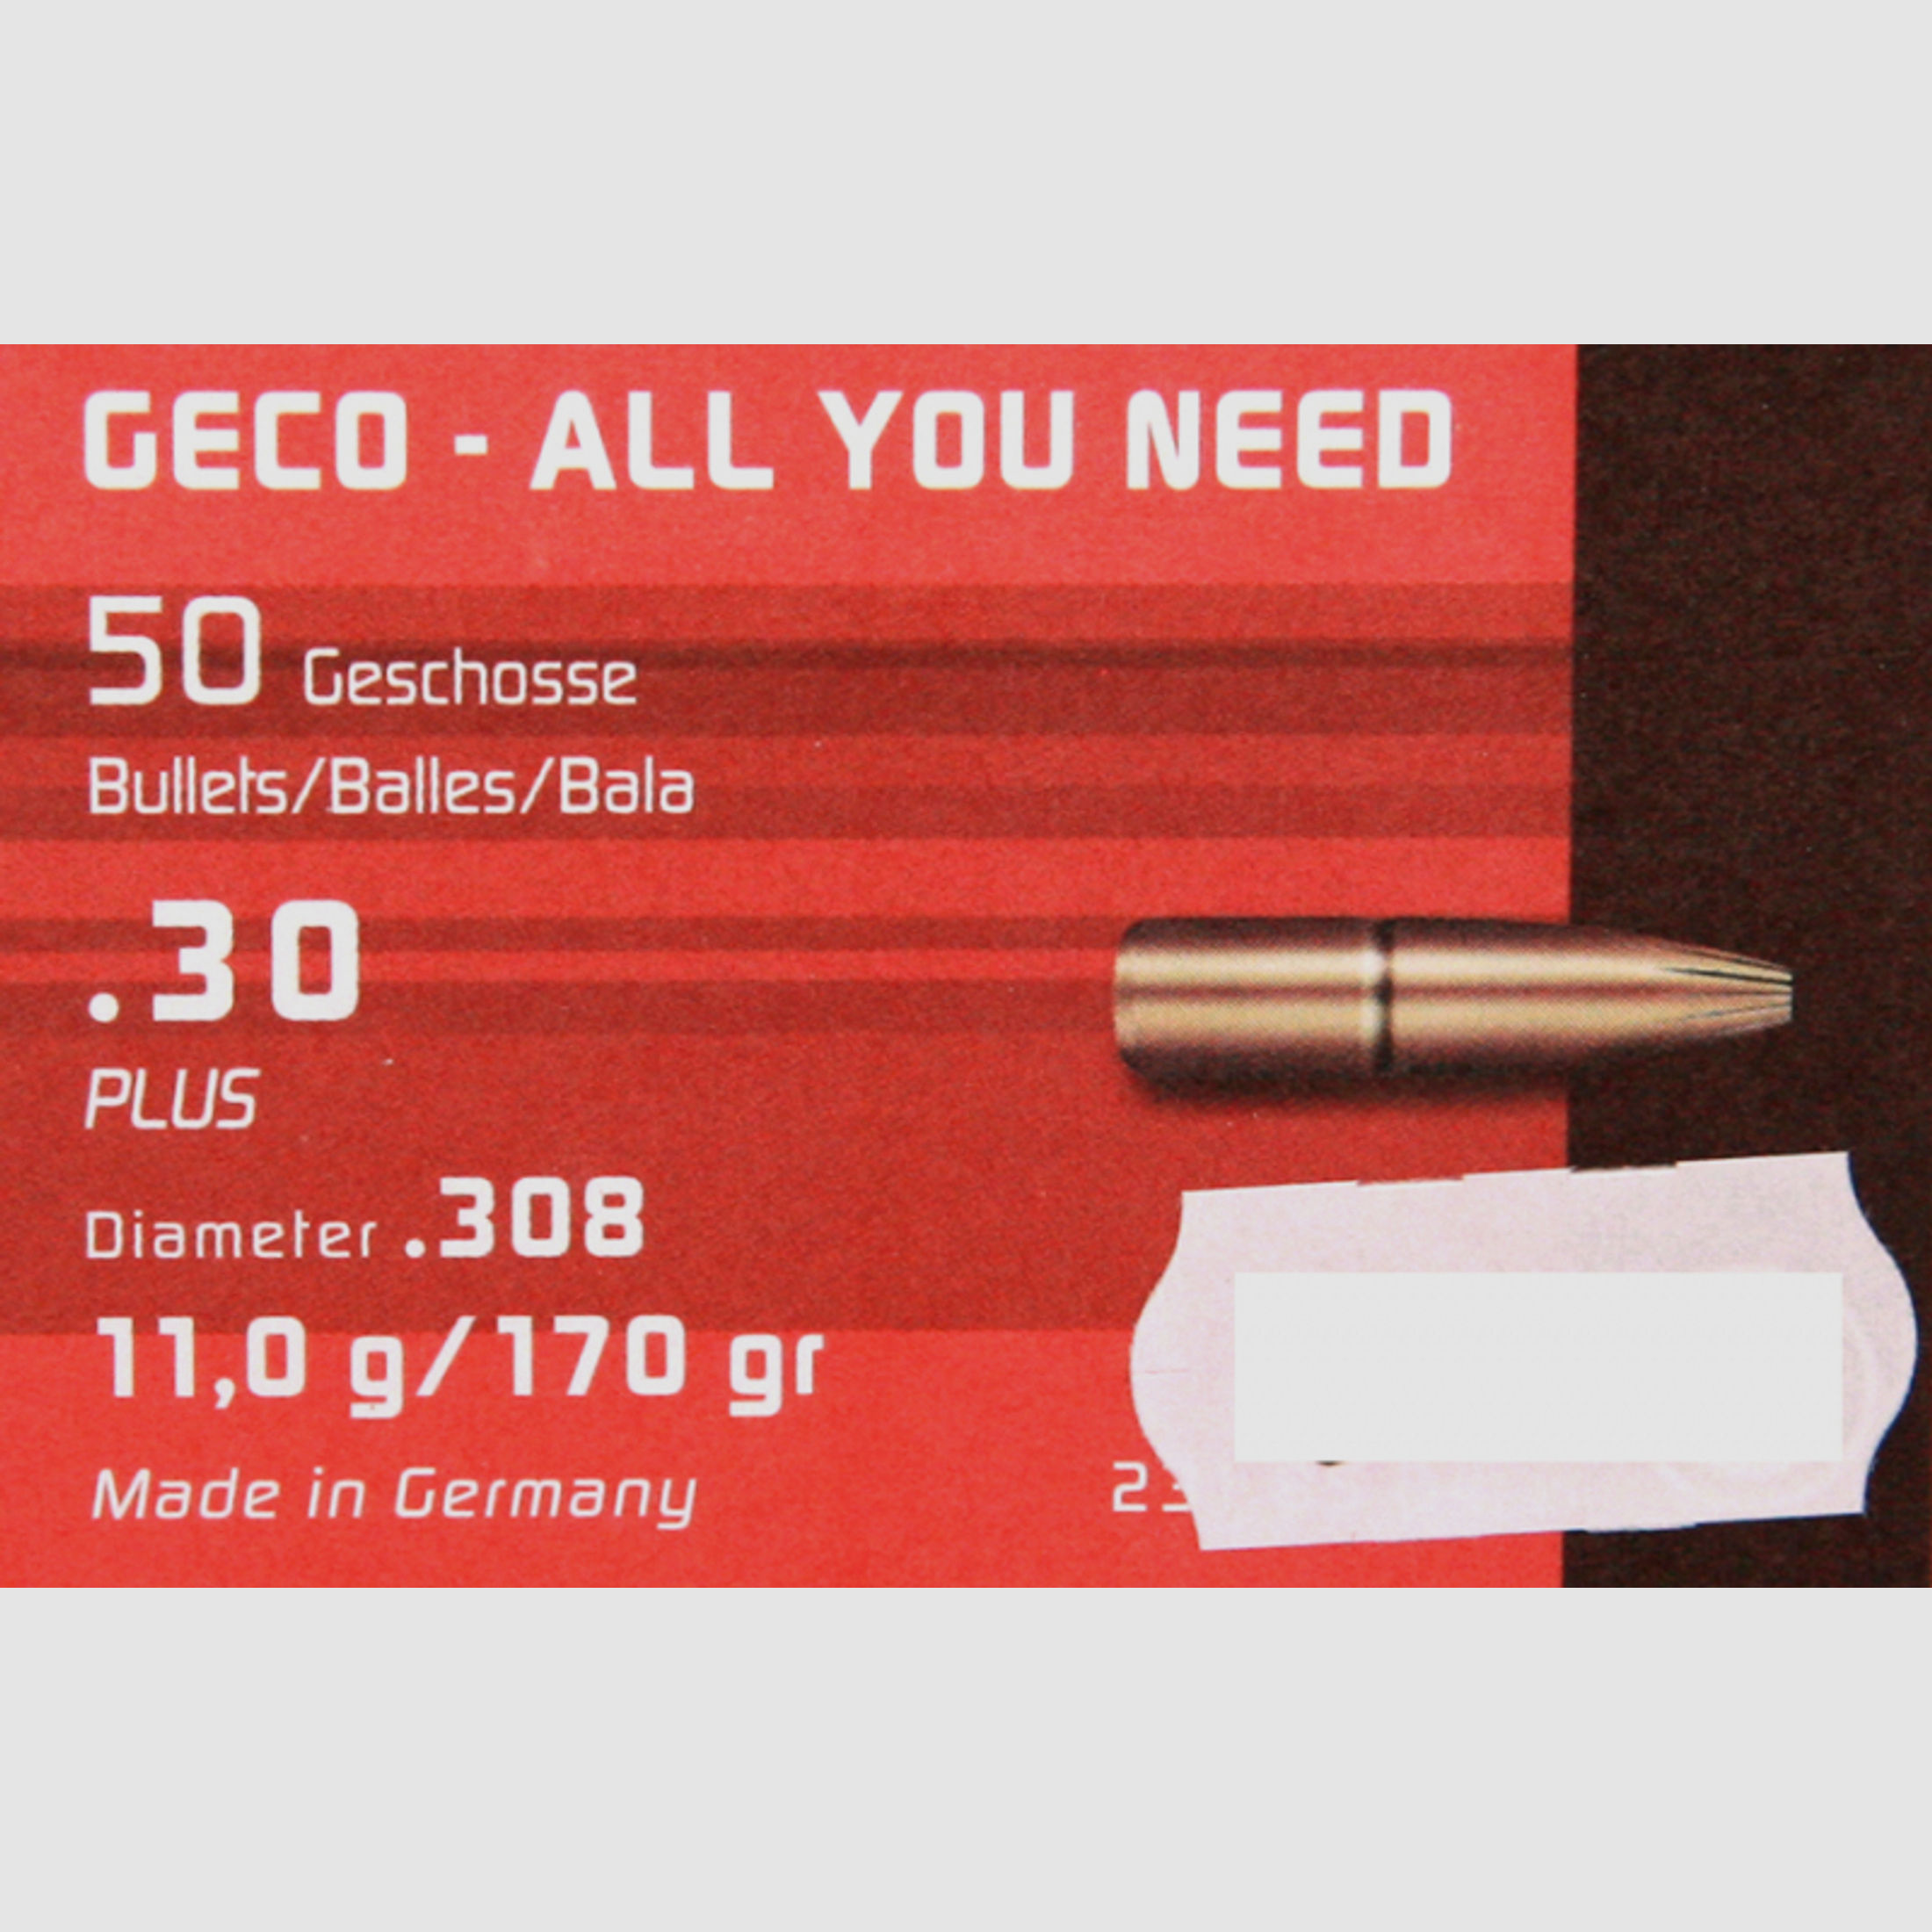 50 Stück NEUE GECO Geschosse - PLUS (Deformationsgeschoss) 7,62mm/.308 - 11g/170gr (#2318564)